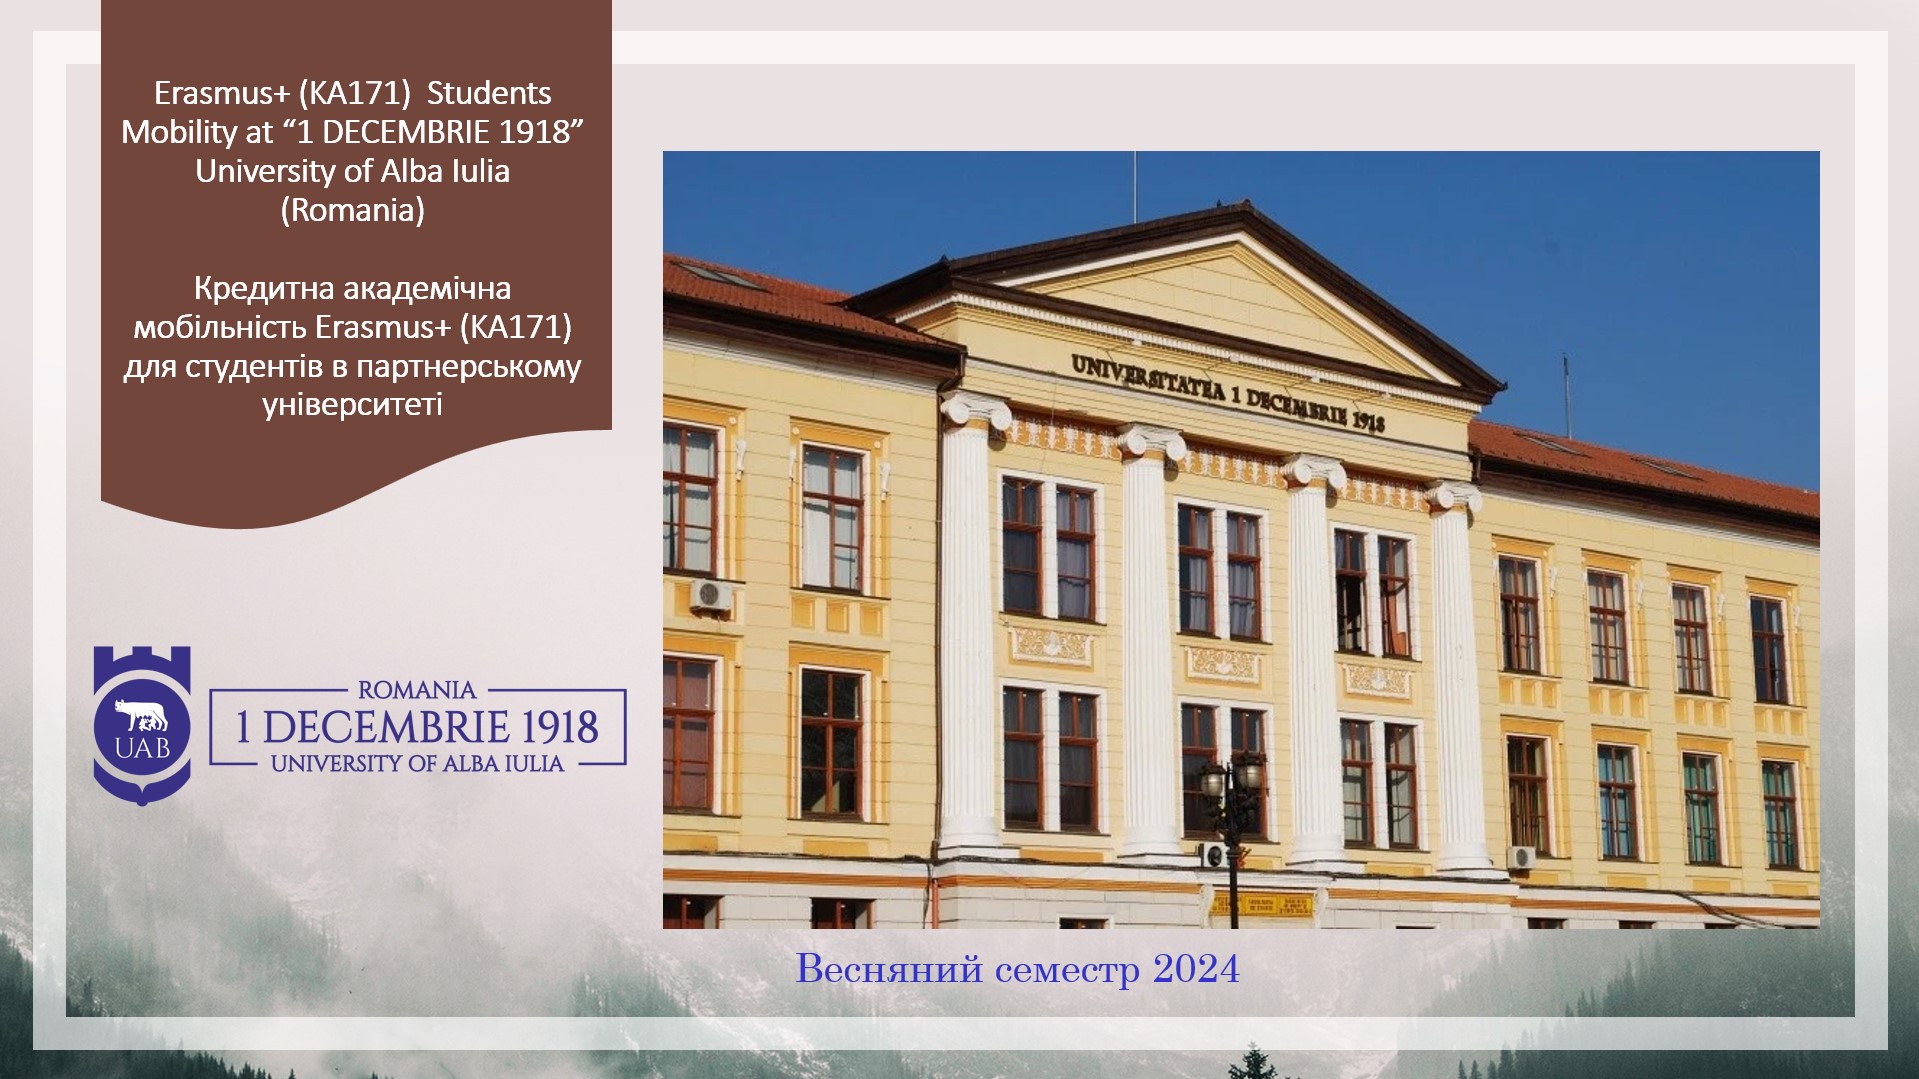 Румунський університет  «1 DECEMBRIE 1918» University of Alba Iulia  запрошує 10 студентів взяти участь у програмі кредитної академічної мобільності Erasmus+ у весняному семестрі 2024 року